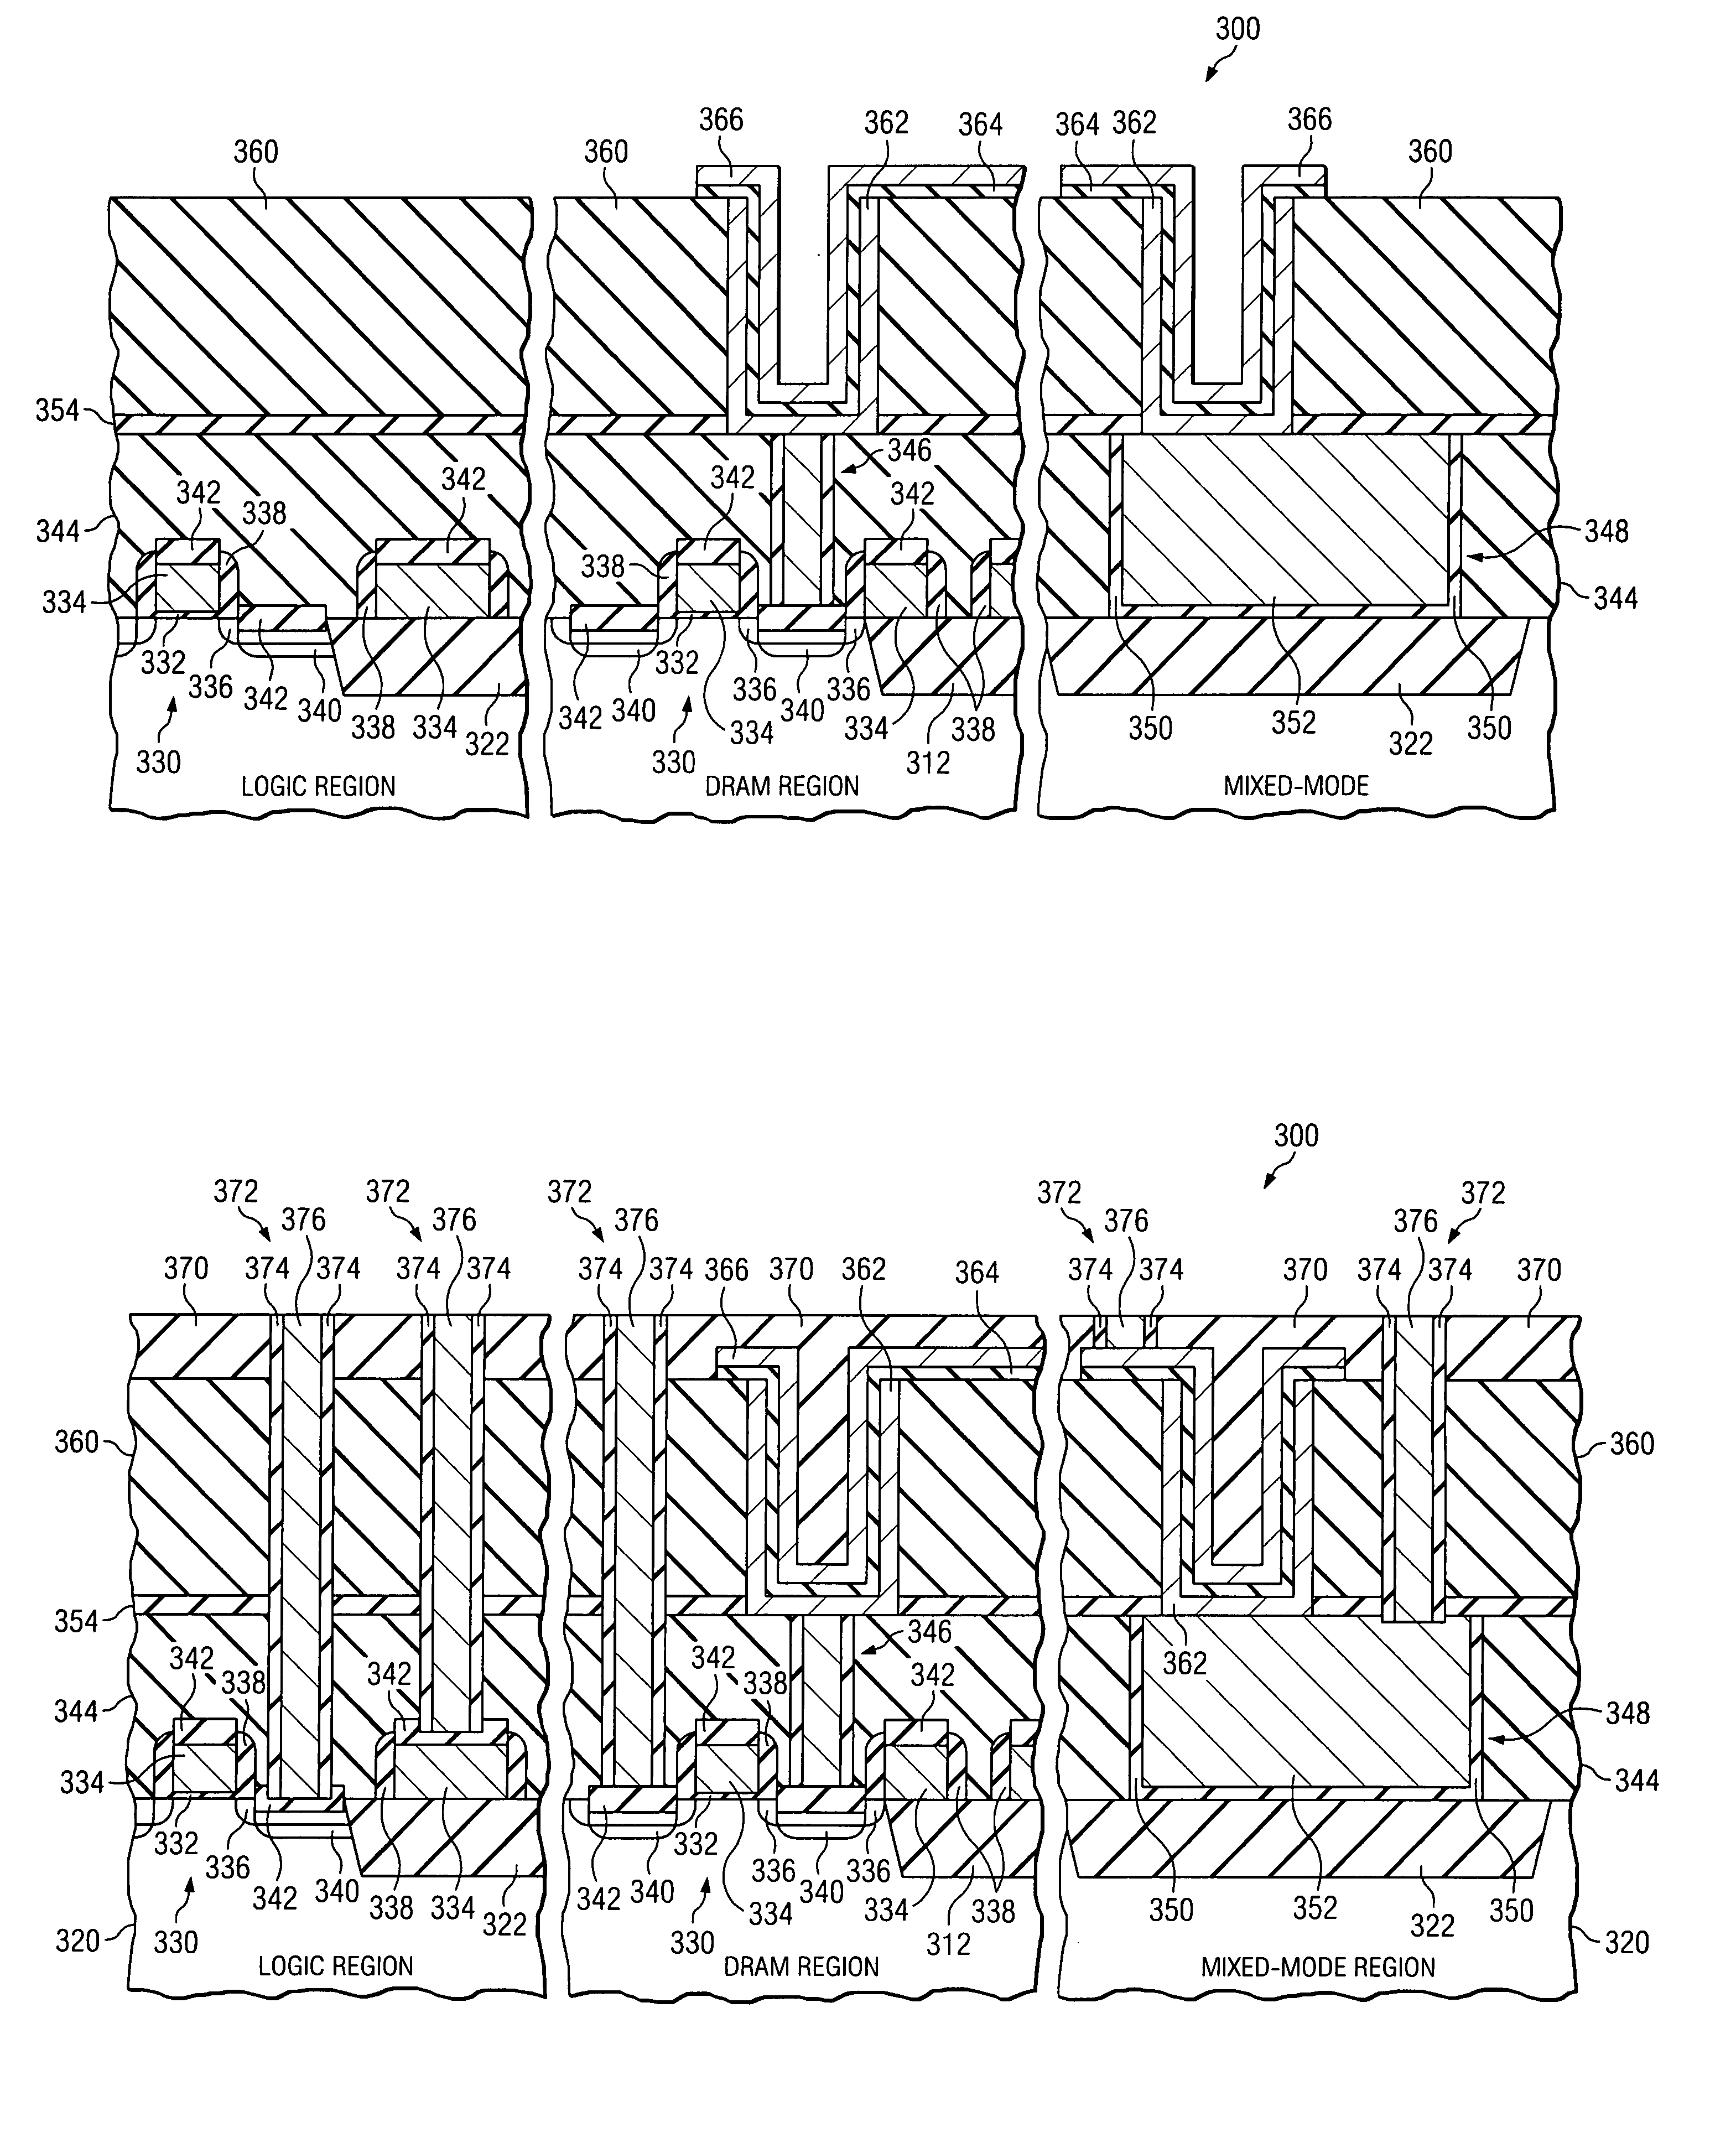 Metal-insulator-metal capacitors